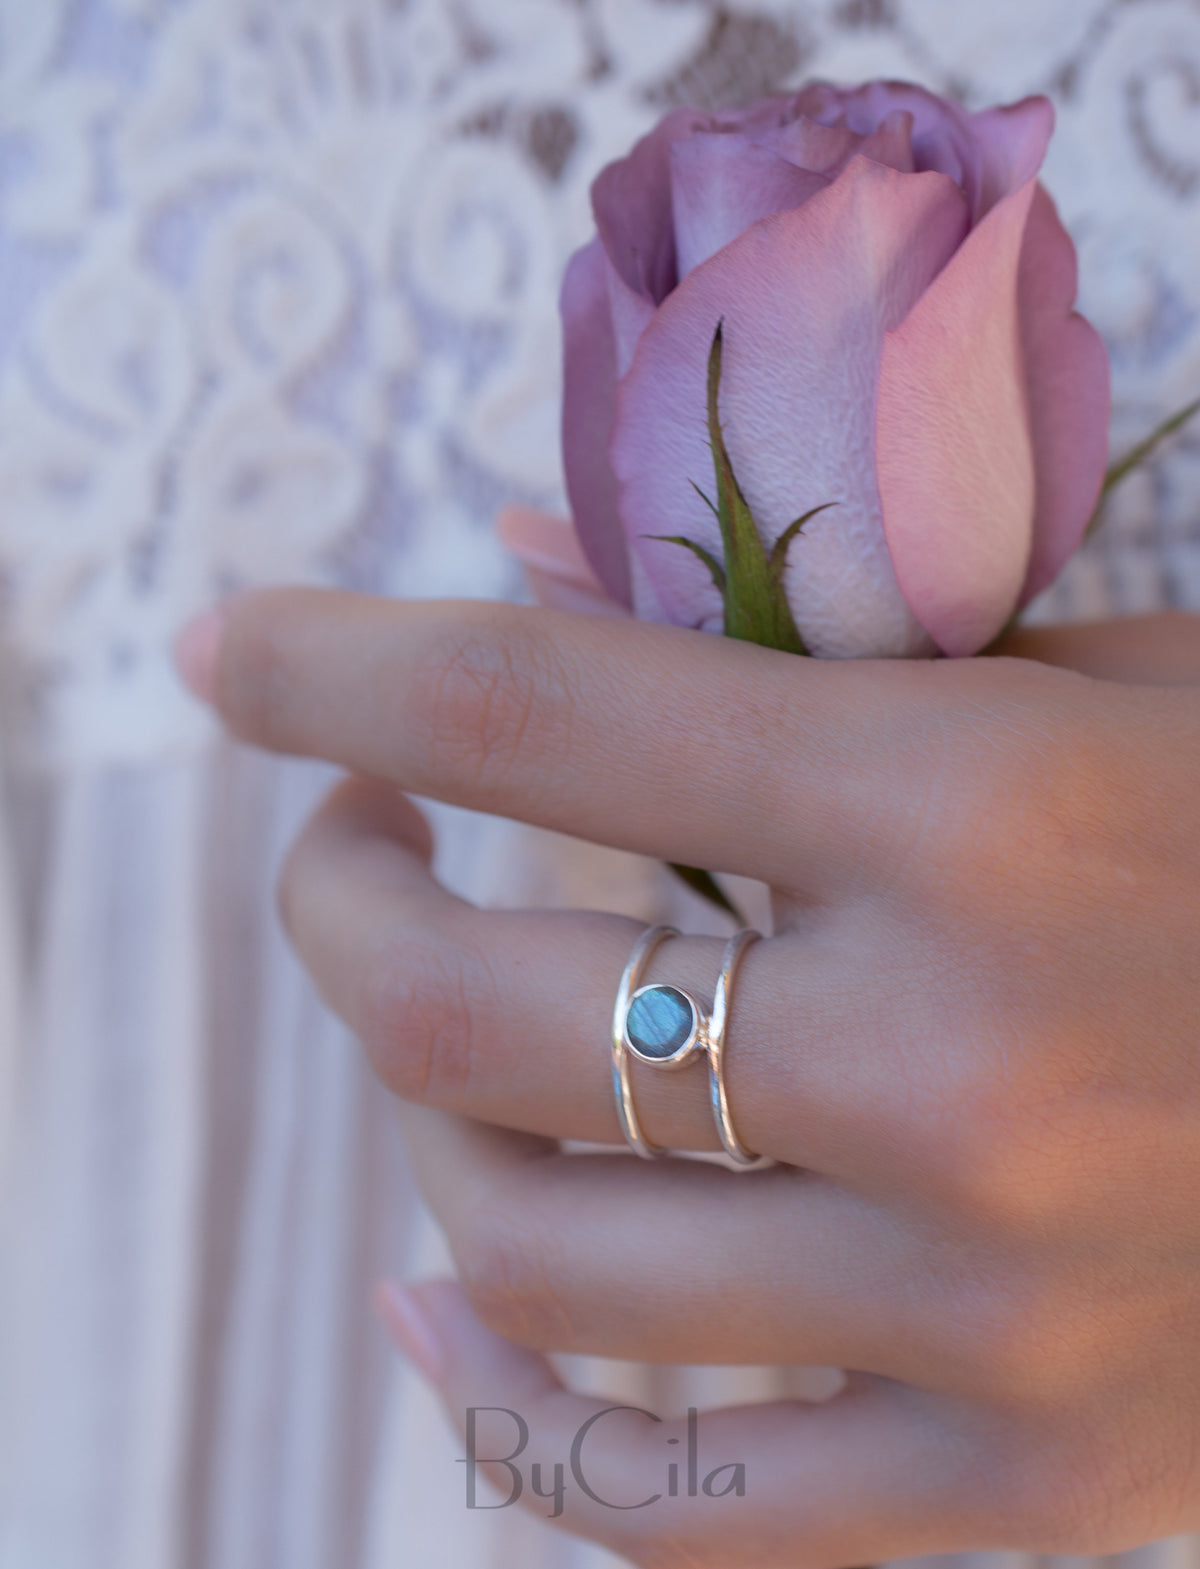 Labradorite Ring * Sterling Silver Ring * Statement Ring * Gemstone Ring * Labradorite * Bridal Ring * Wedding Ring * Organic Ring * BJR032